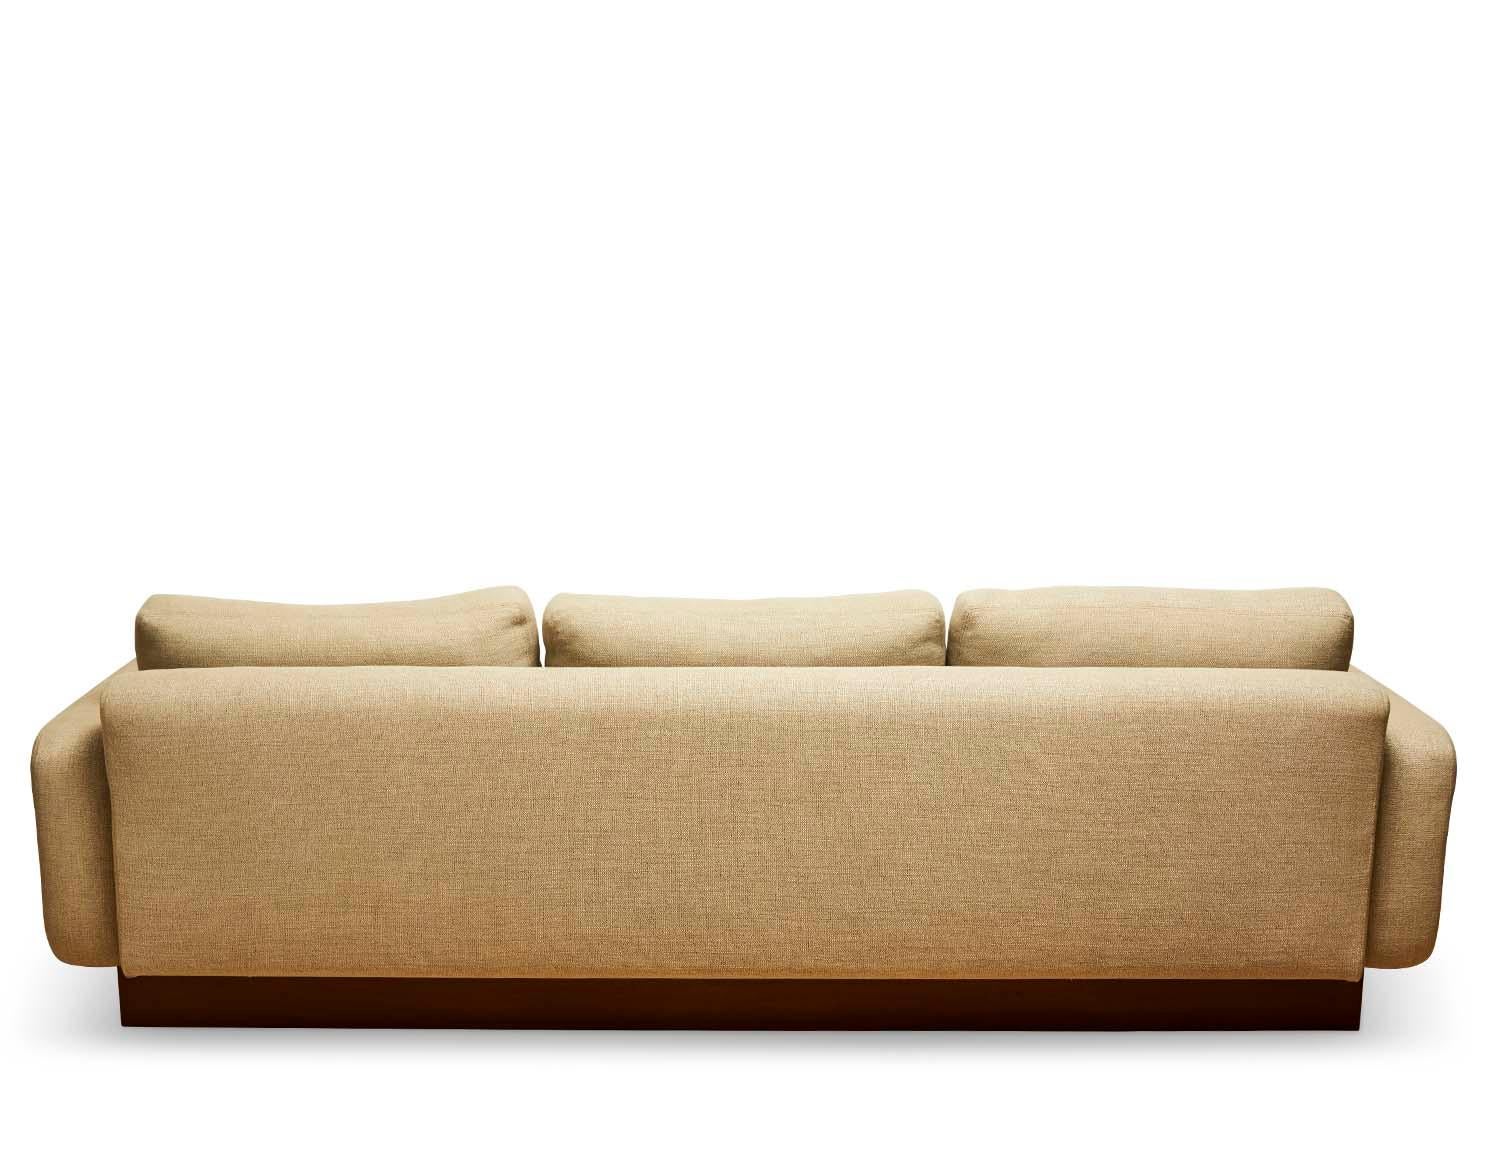 lawson fenning mesa sofa